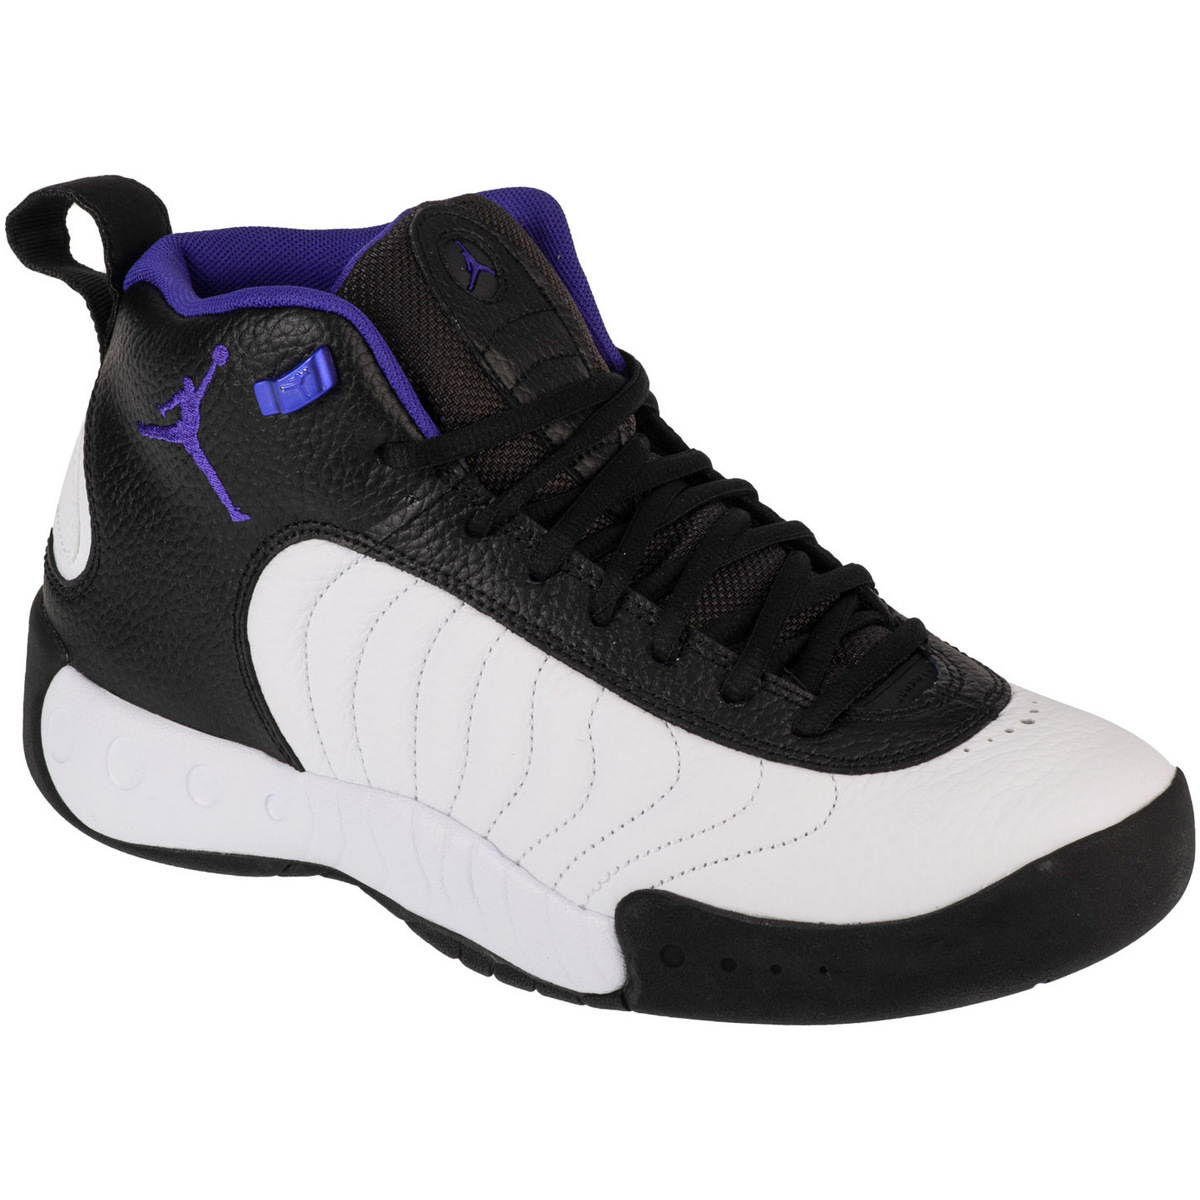 Παπούτσια του Μπάσκετ Nike Air Jordan Jumpman Pro